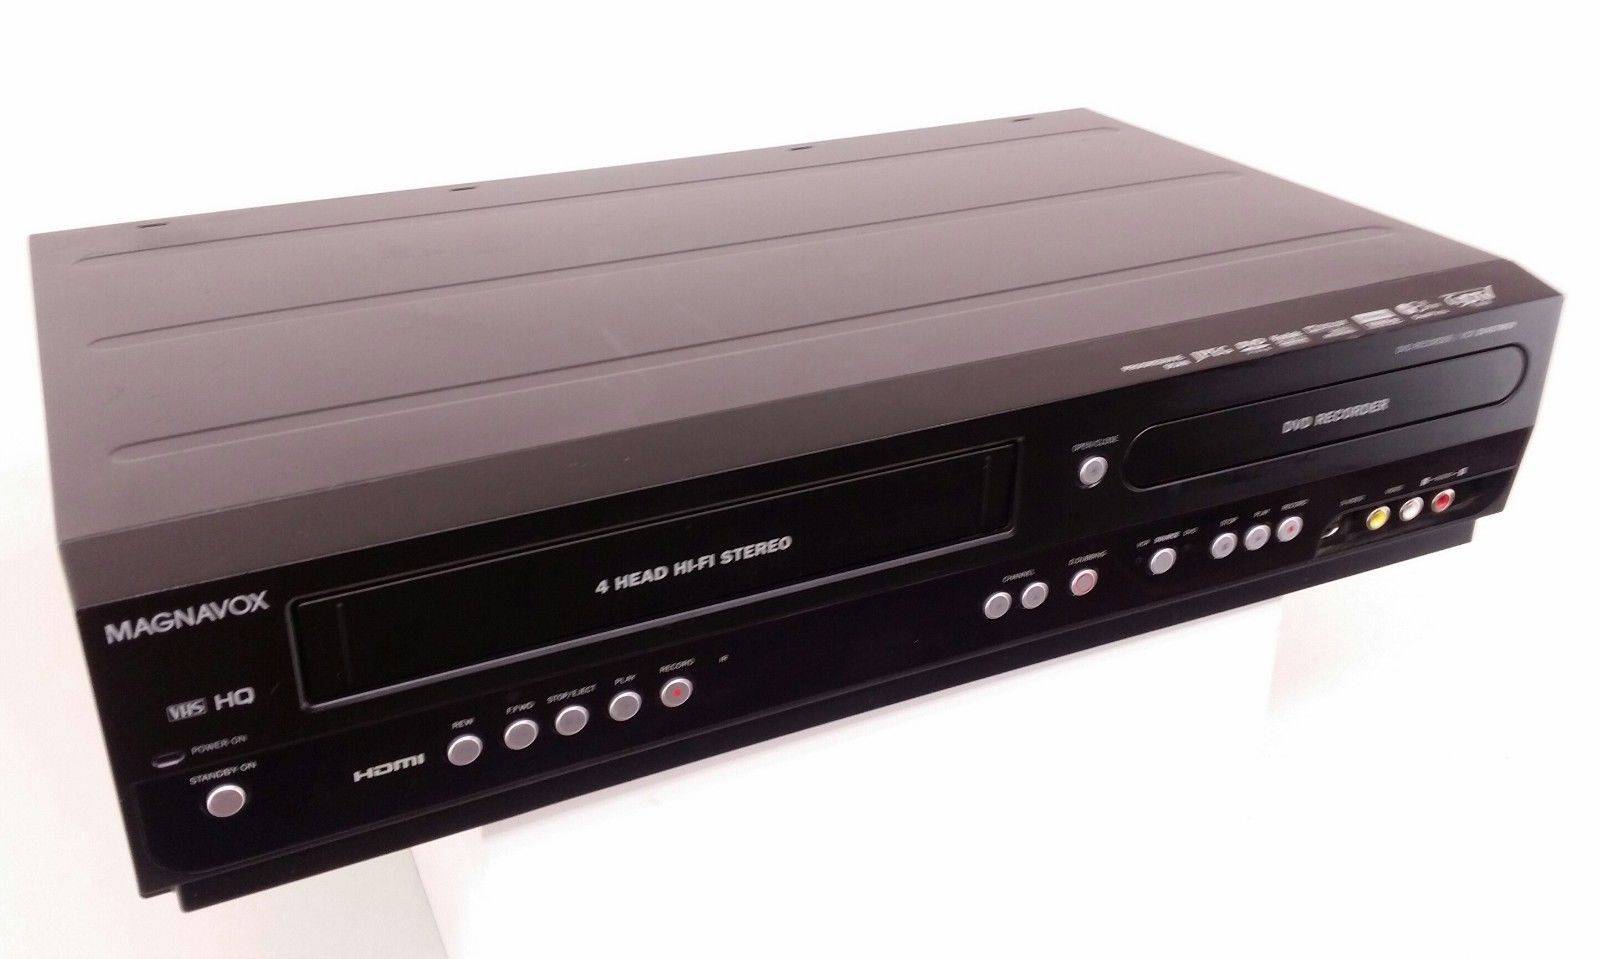 Magnavox TV - VCR Combo